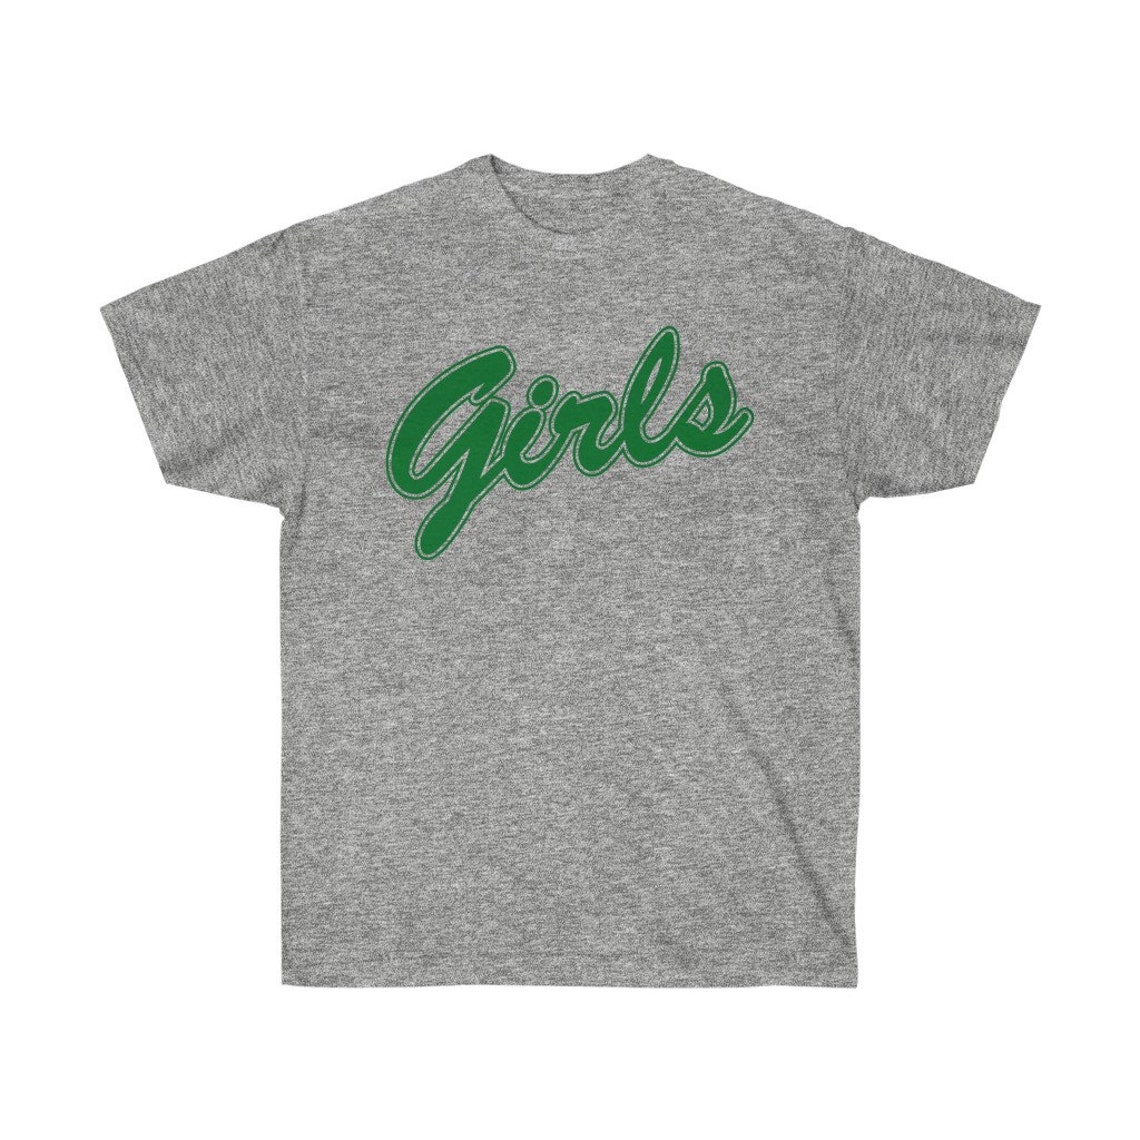 Rachel Green Girls T-Shirt Green Girls Tee from Friends | Etsy